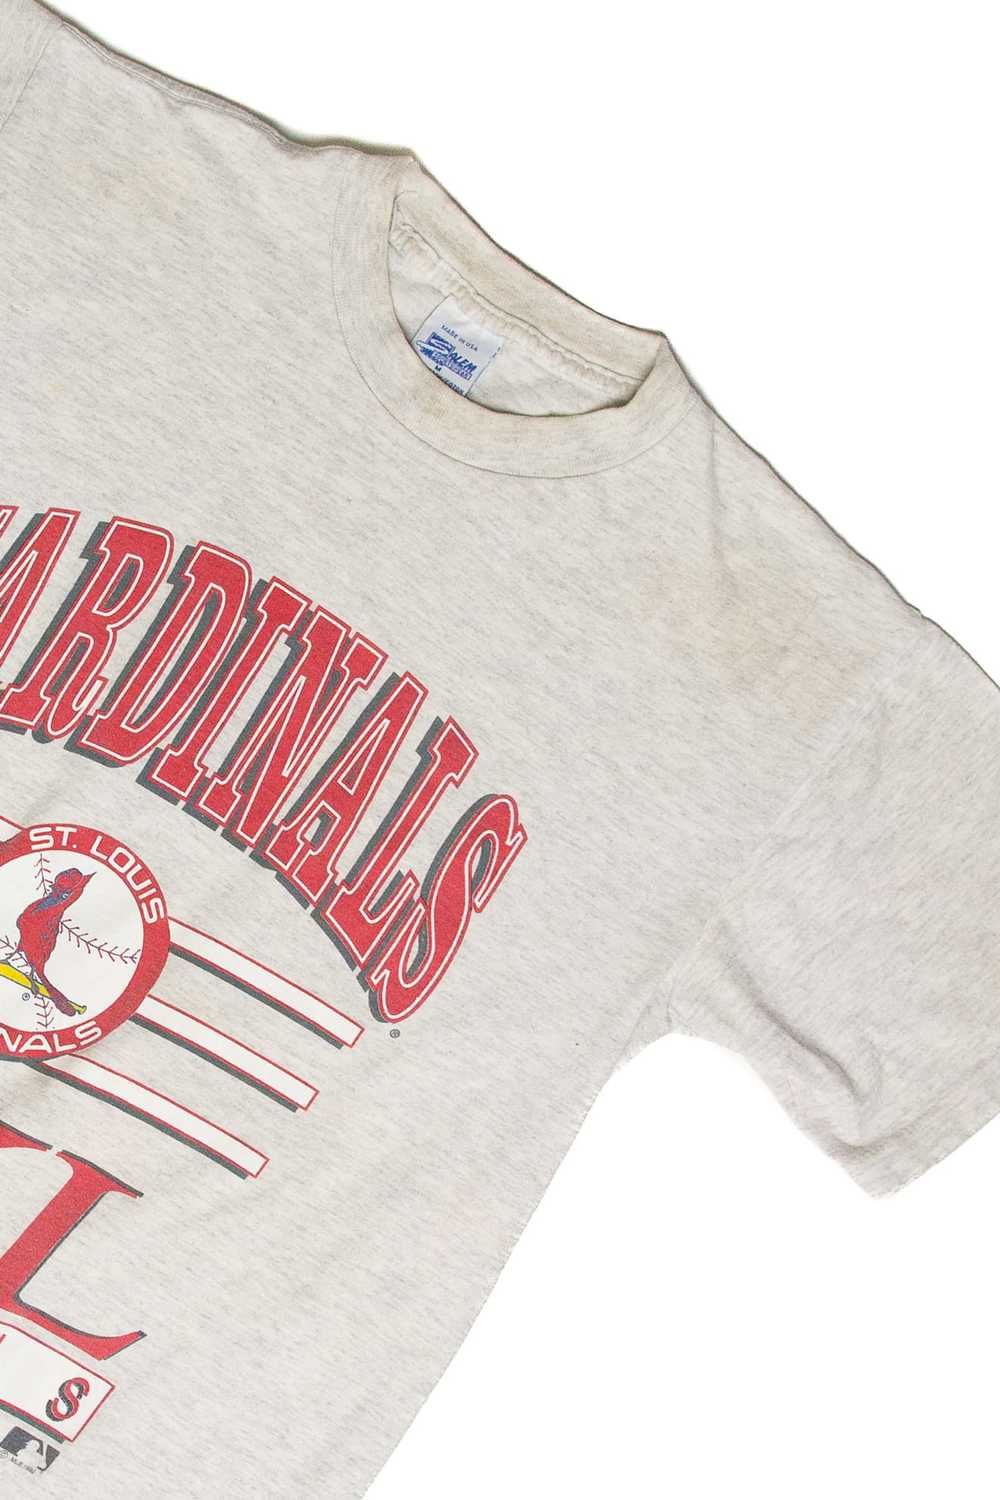 Vintage St. Louis Cardinals T-Shirt (1992) - image 3